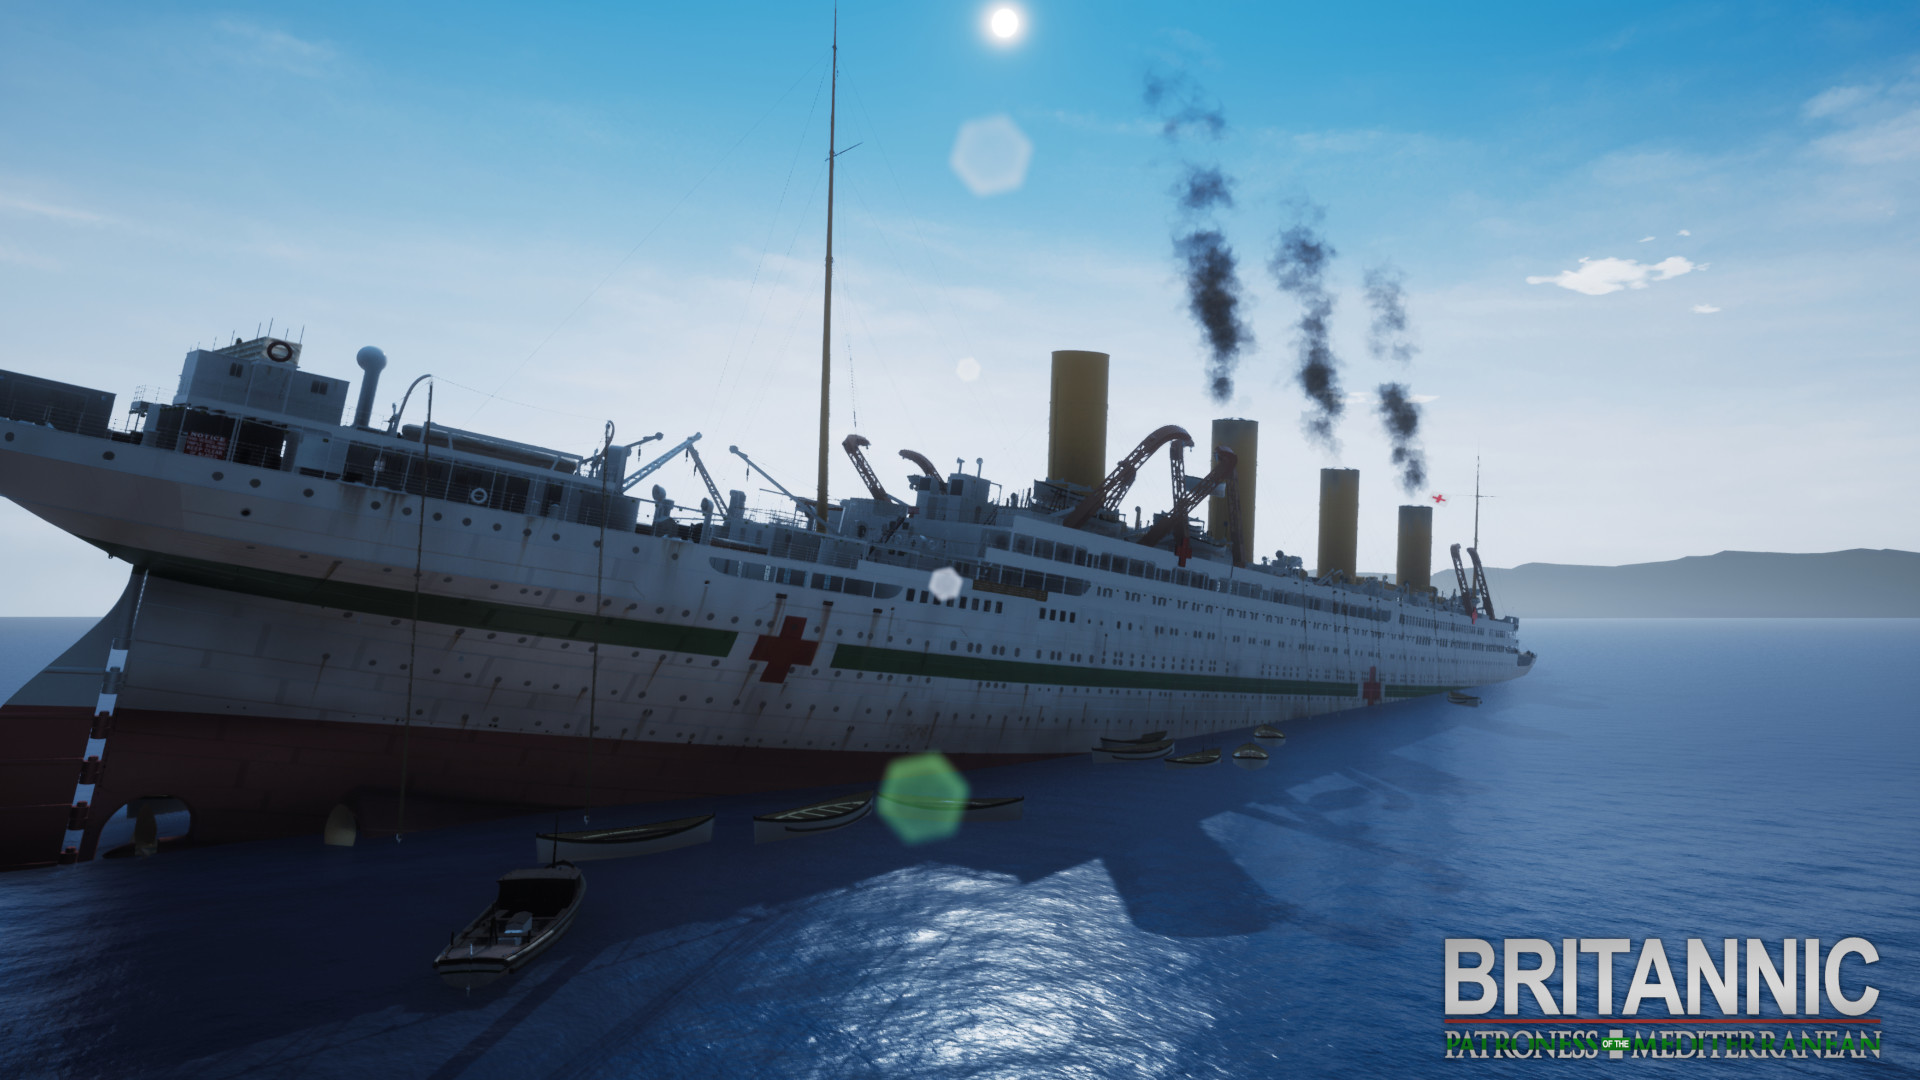 Britannic Patroness Of The Mediterranean On Steam - roblox britannic sinking games on steam